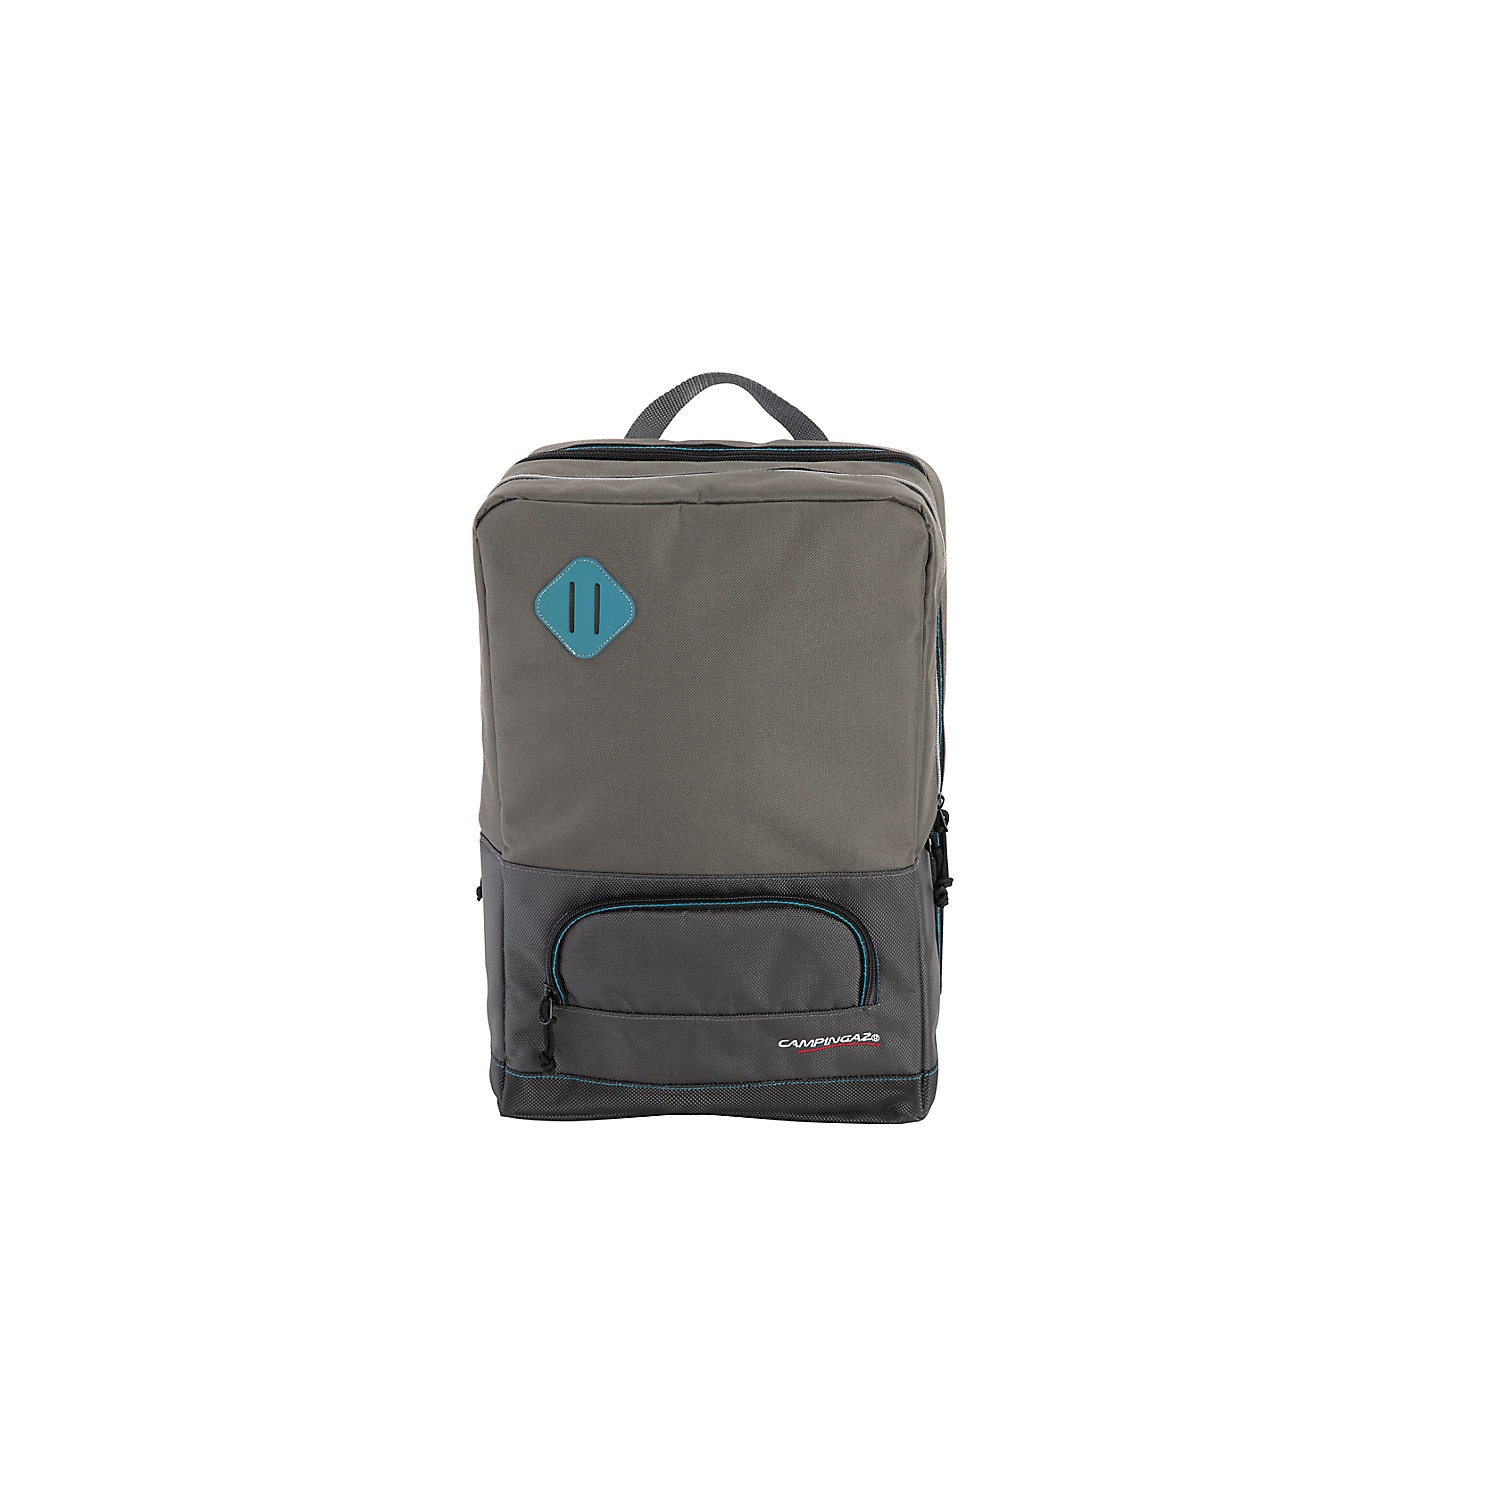 Kühltasche Tropic Backpack blau/orange 20 l - Bantam-Camping AG